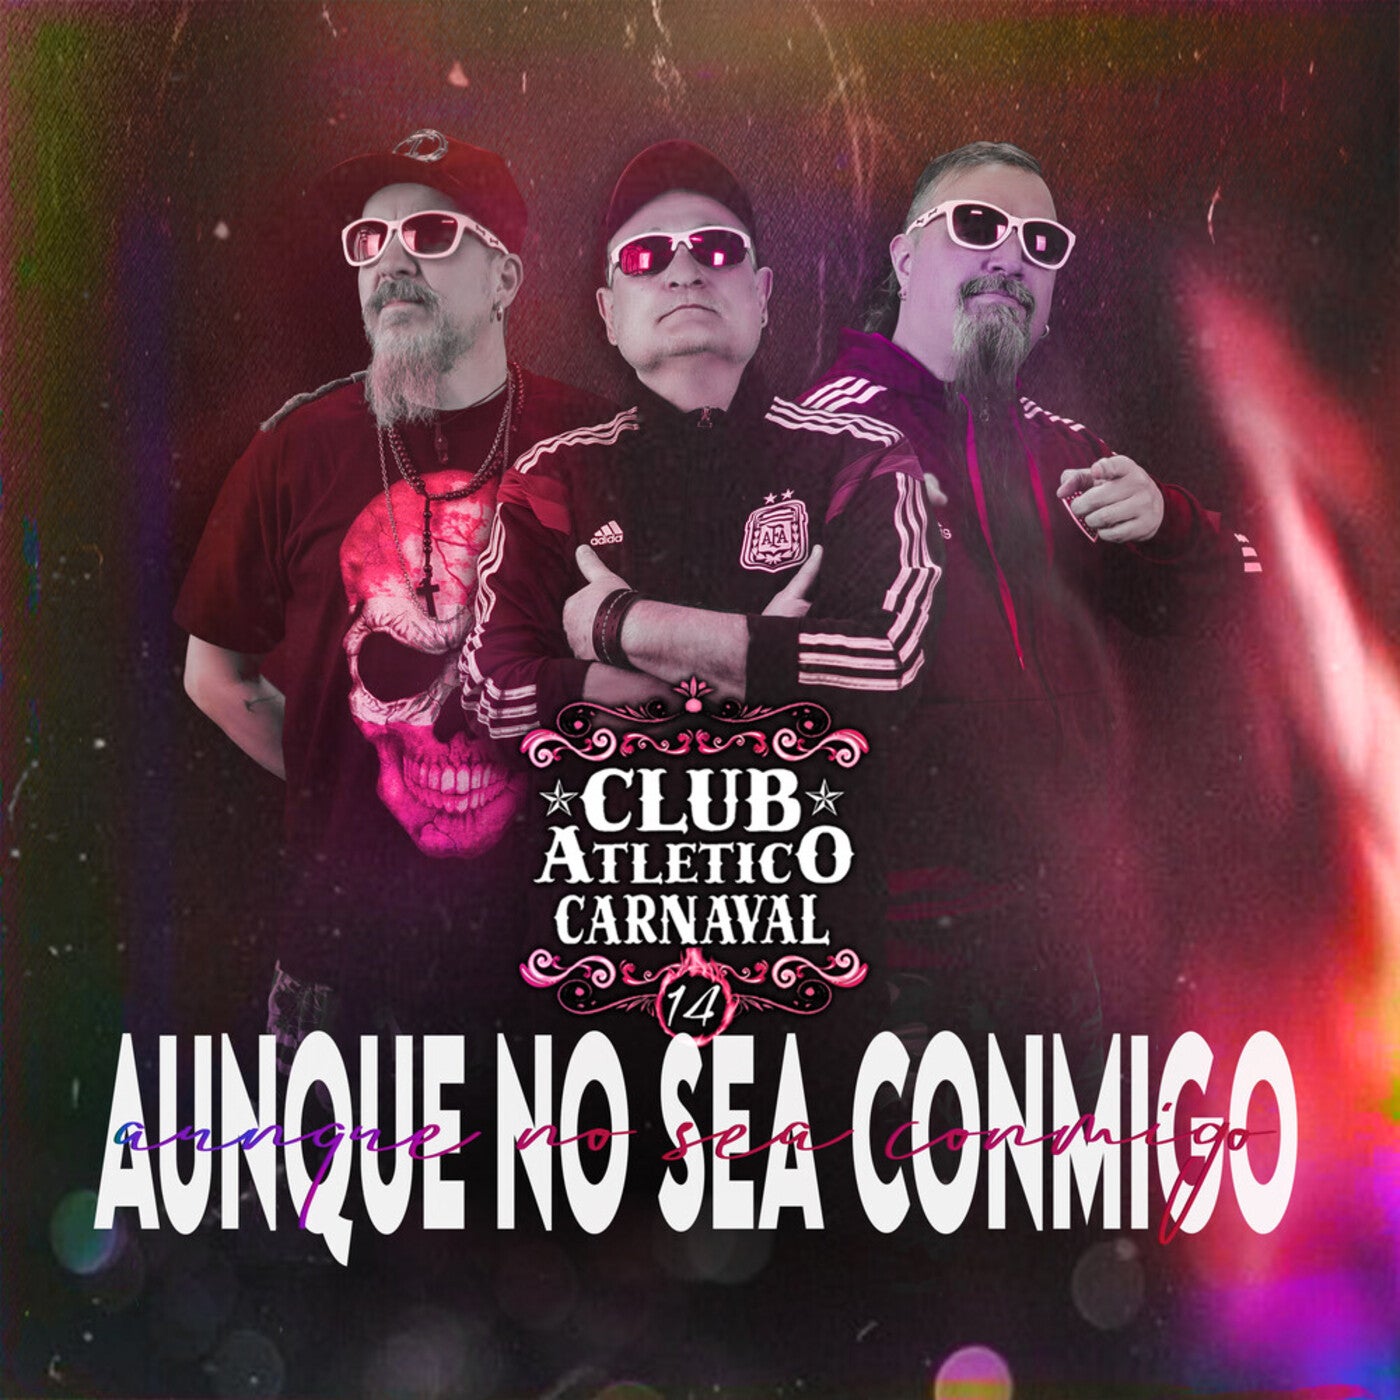 Aunque No Sea Conmigo by Club Atlético Carnaval on Beatsource